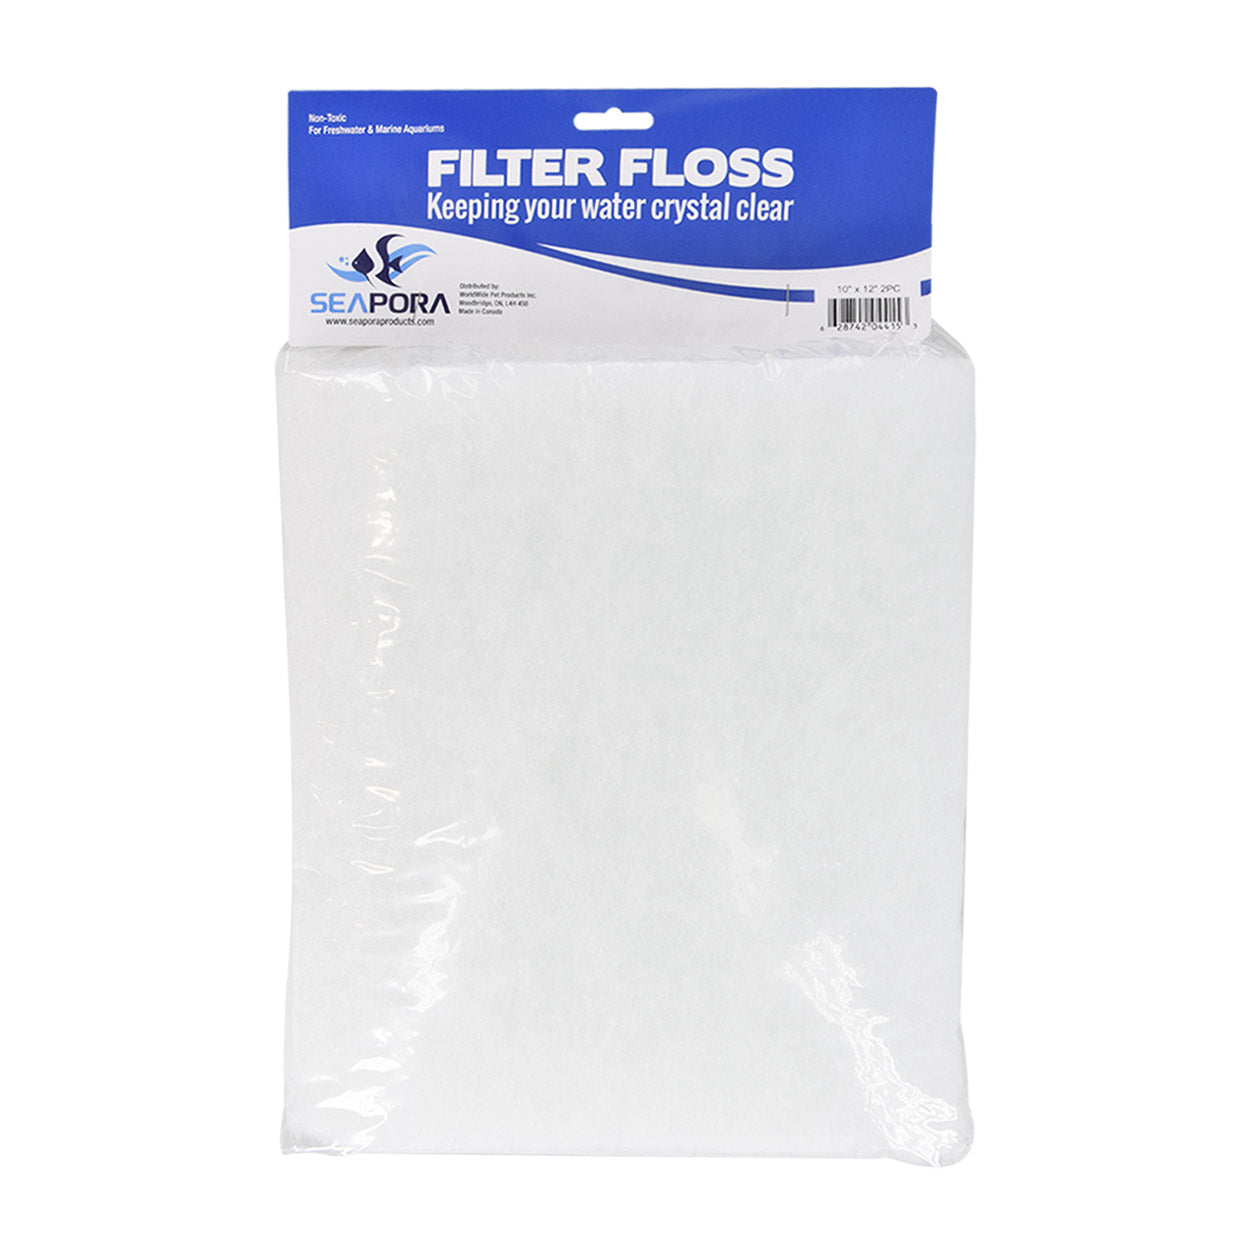 SEAPORA FILTER FLOSS 12X120 (10 SQ FT ROLL) - Aquatics Unlimited